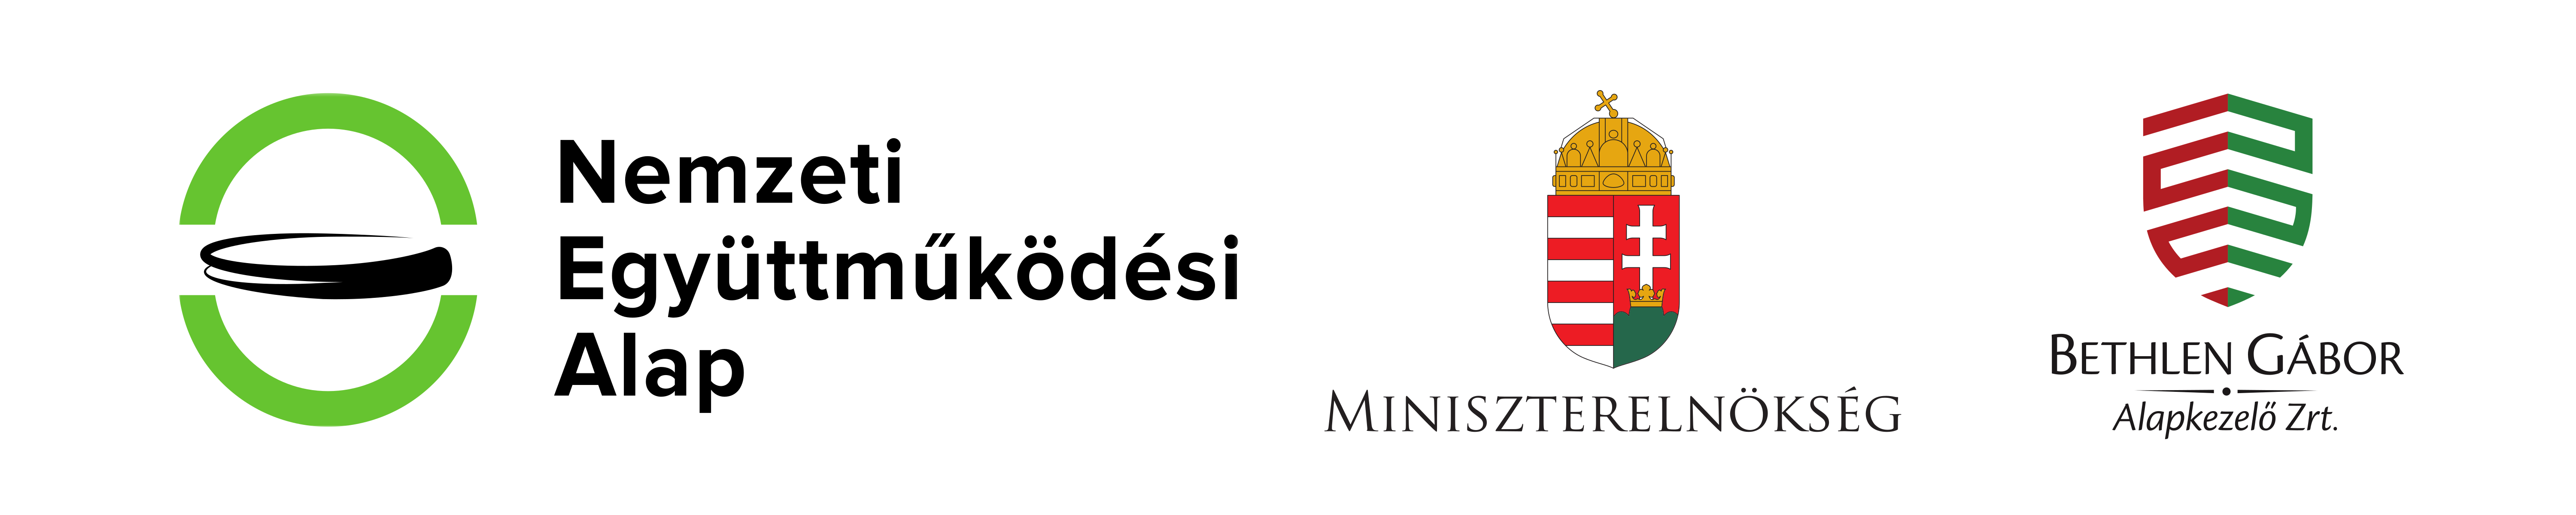 Nemzeti Együttműködési Alap, Miniszterelnökség és Bethlen Gábor Alapkezelő Zrt. logója